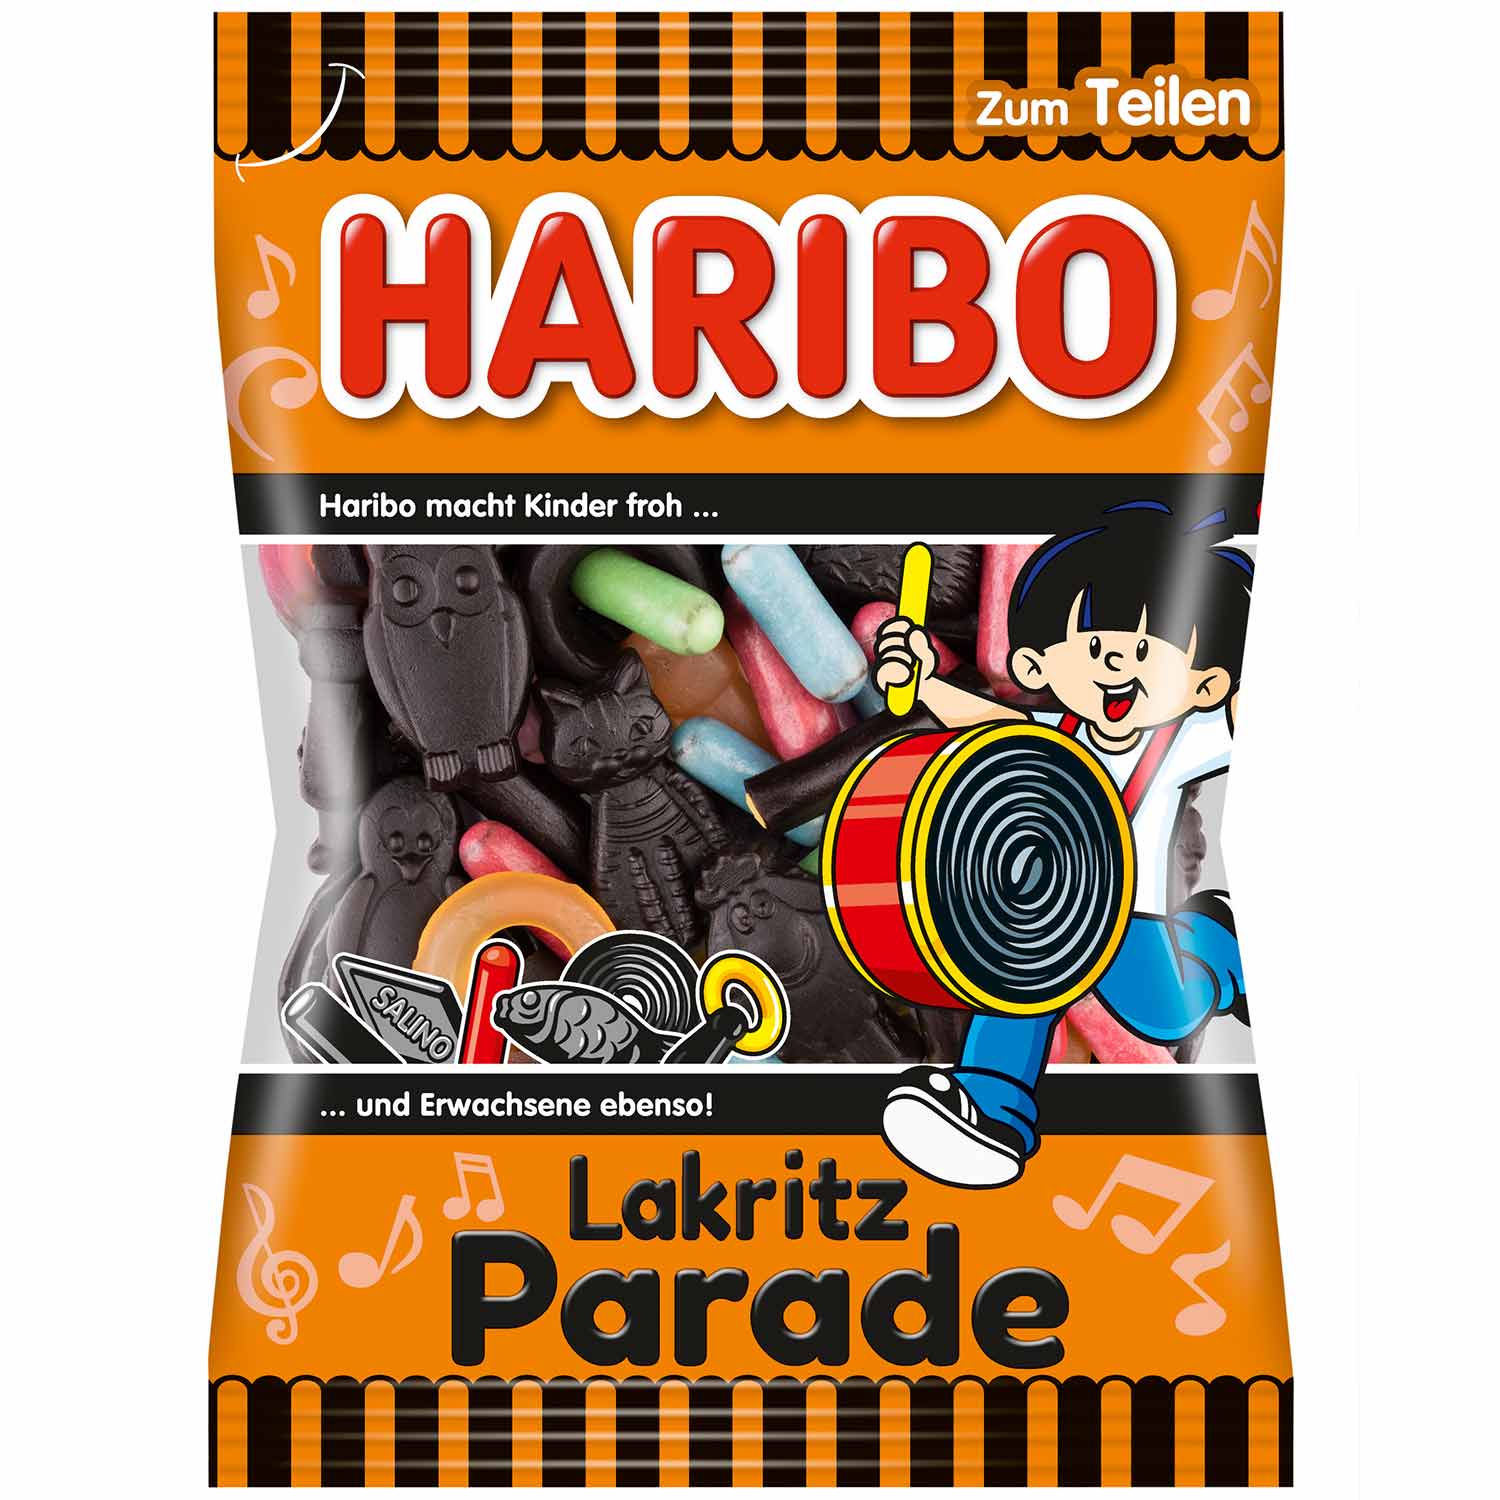 Haribo Lakritz Parade (German)